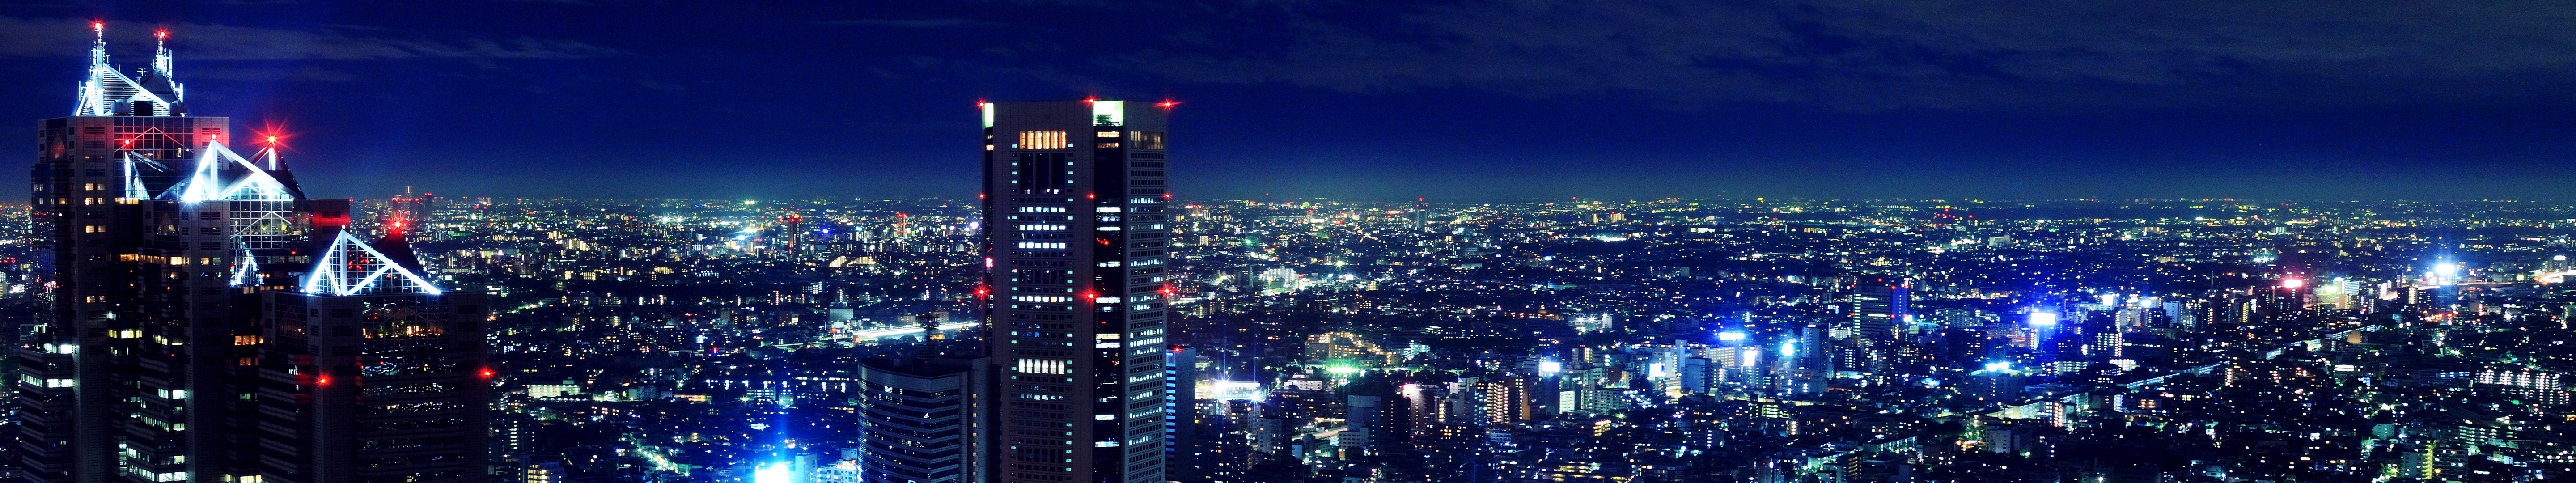 Thưởng thức vẻ đẹp của Tokyo với bức hình nền 5760x1080 miễn phí tuyệt đẹp này. Hình ảnh rực rỡ và sắc nét sẽ khiến bạn cảm thấy như mình đang sống trong một thành phố nhộn nhịp và tràn đầy sức sống.